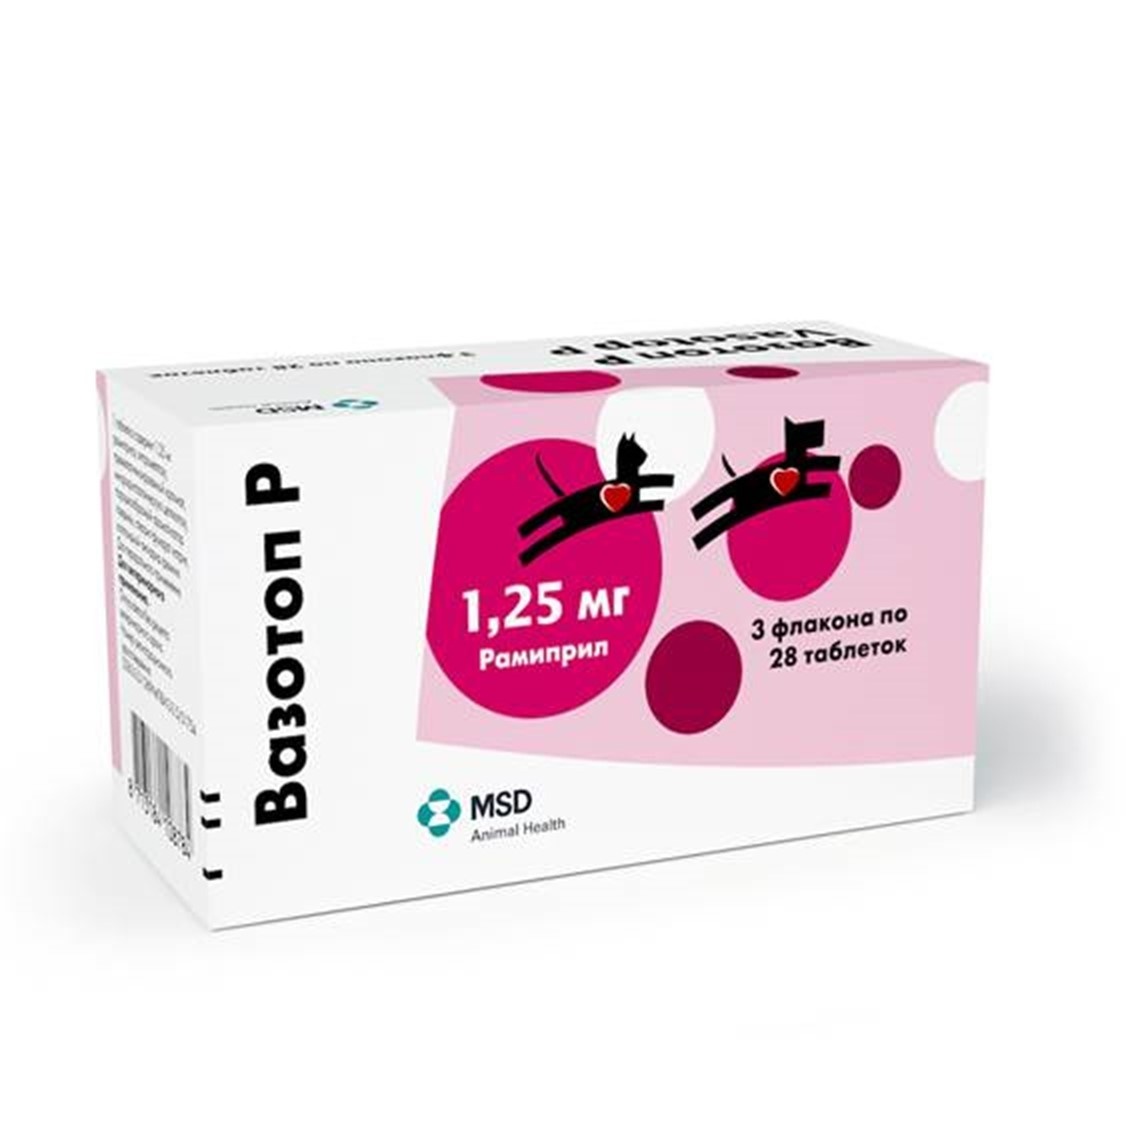 Intervet вазотоп, 3х28 таблеток по 1,25 мг (70 г)